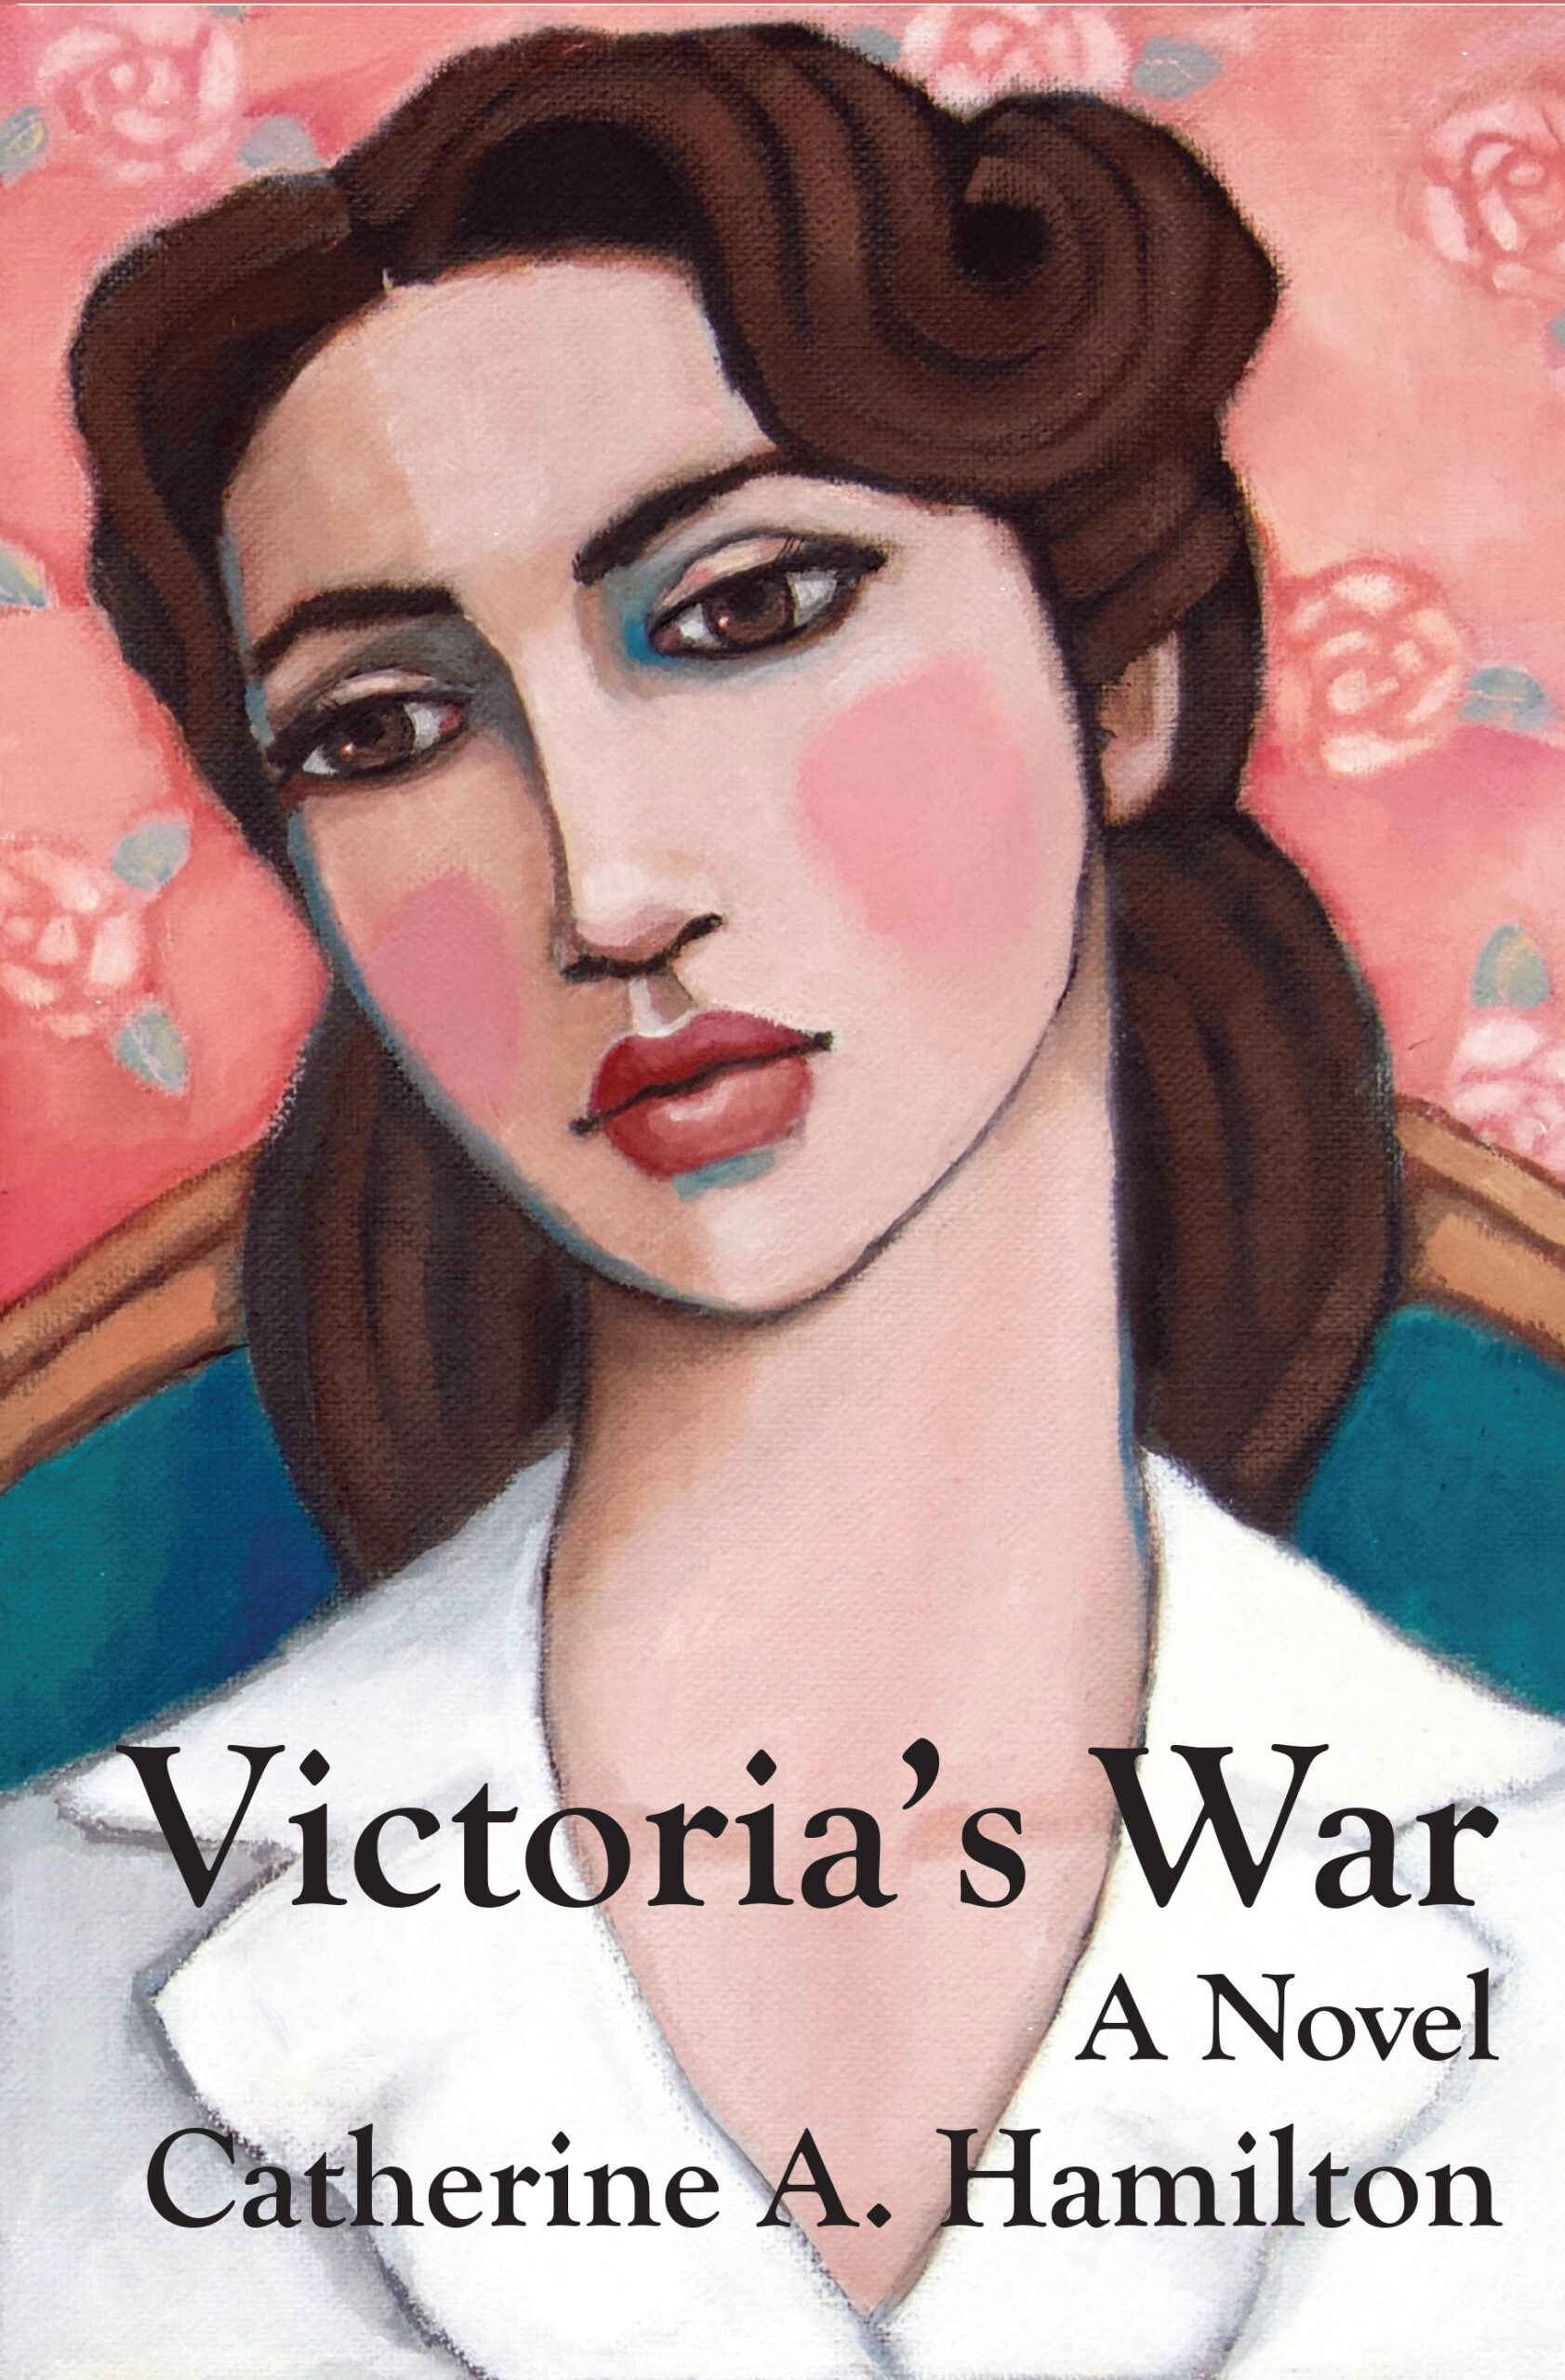 Victoria’s War Book Launch Oct 8 in Austin, TX